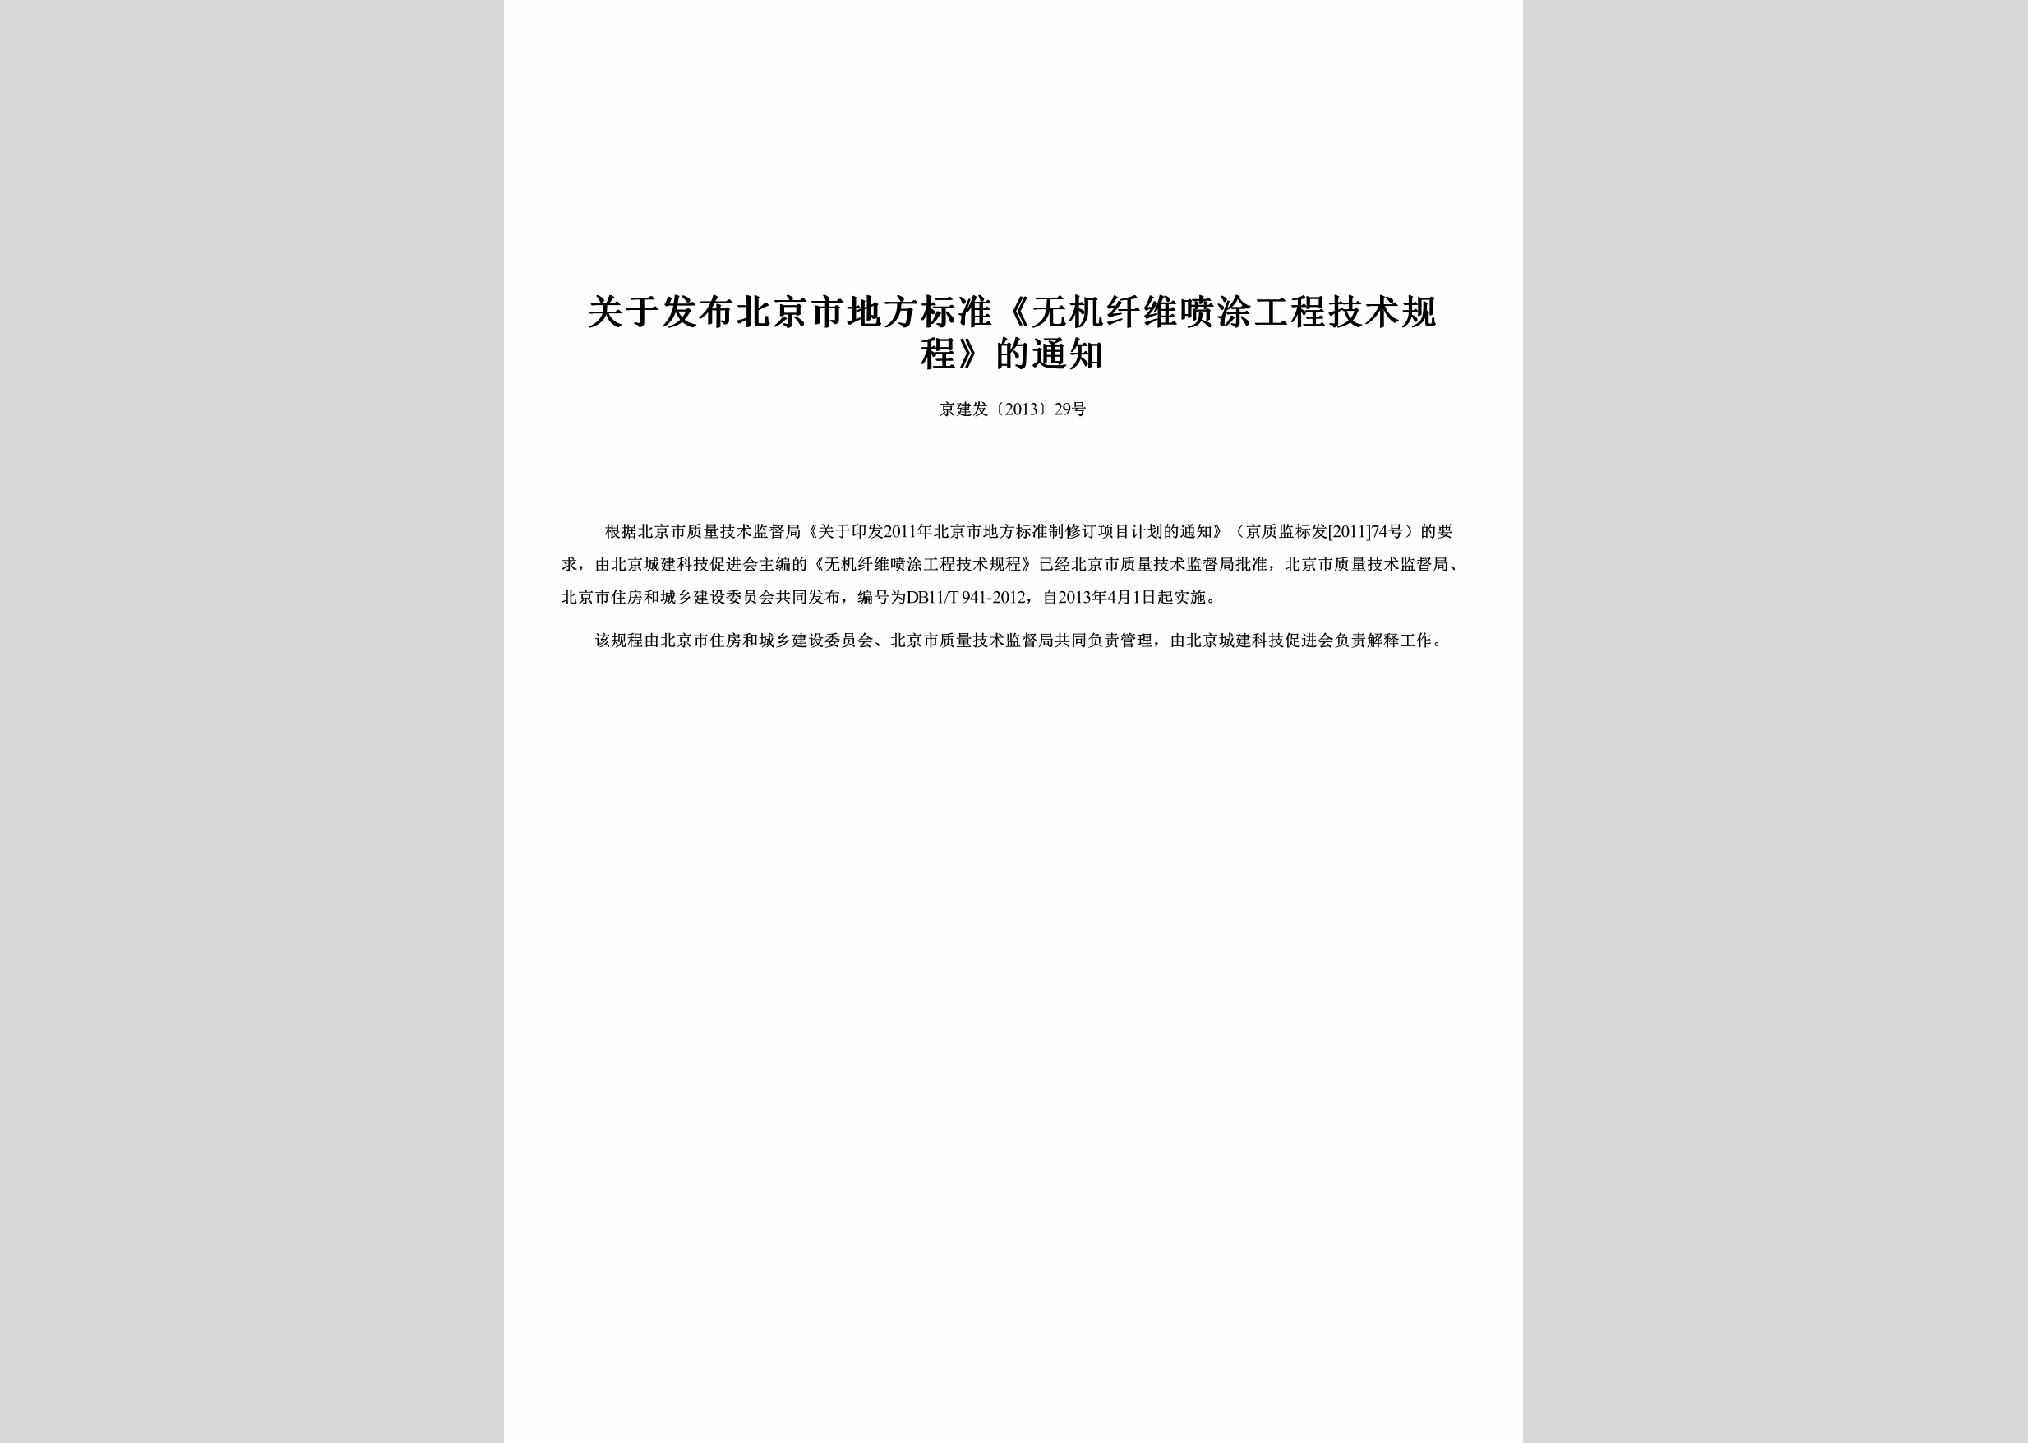 京建发[2013]29号：关于发布北京市地方标准《无机纤维喷涂工程技术规程》的通知